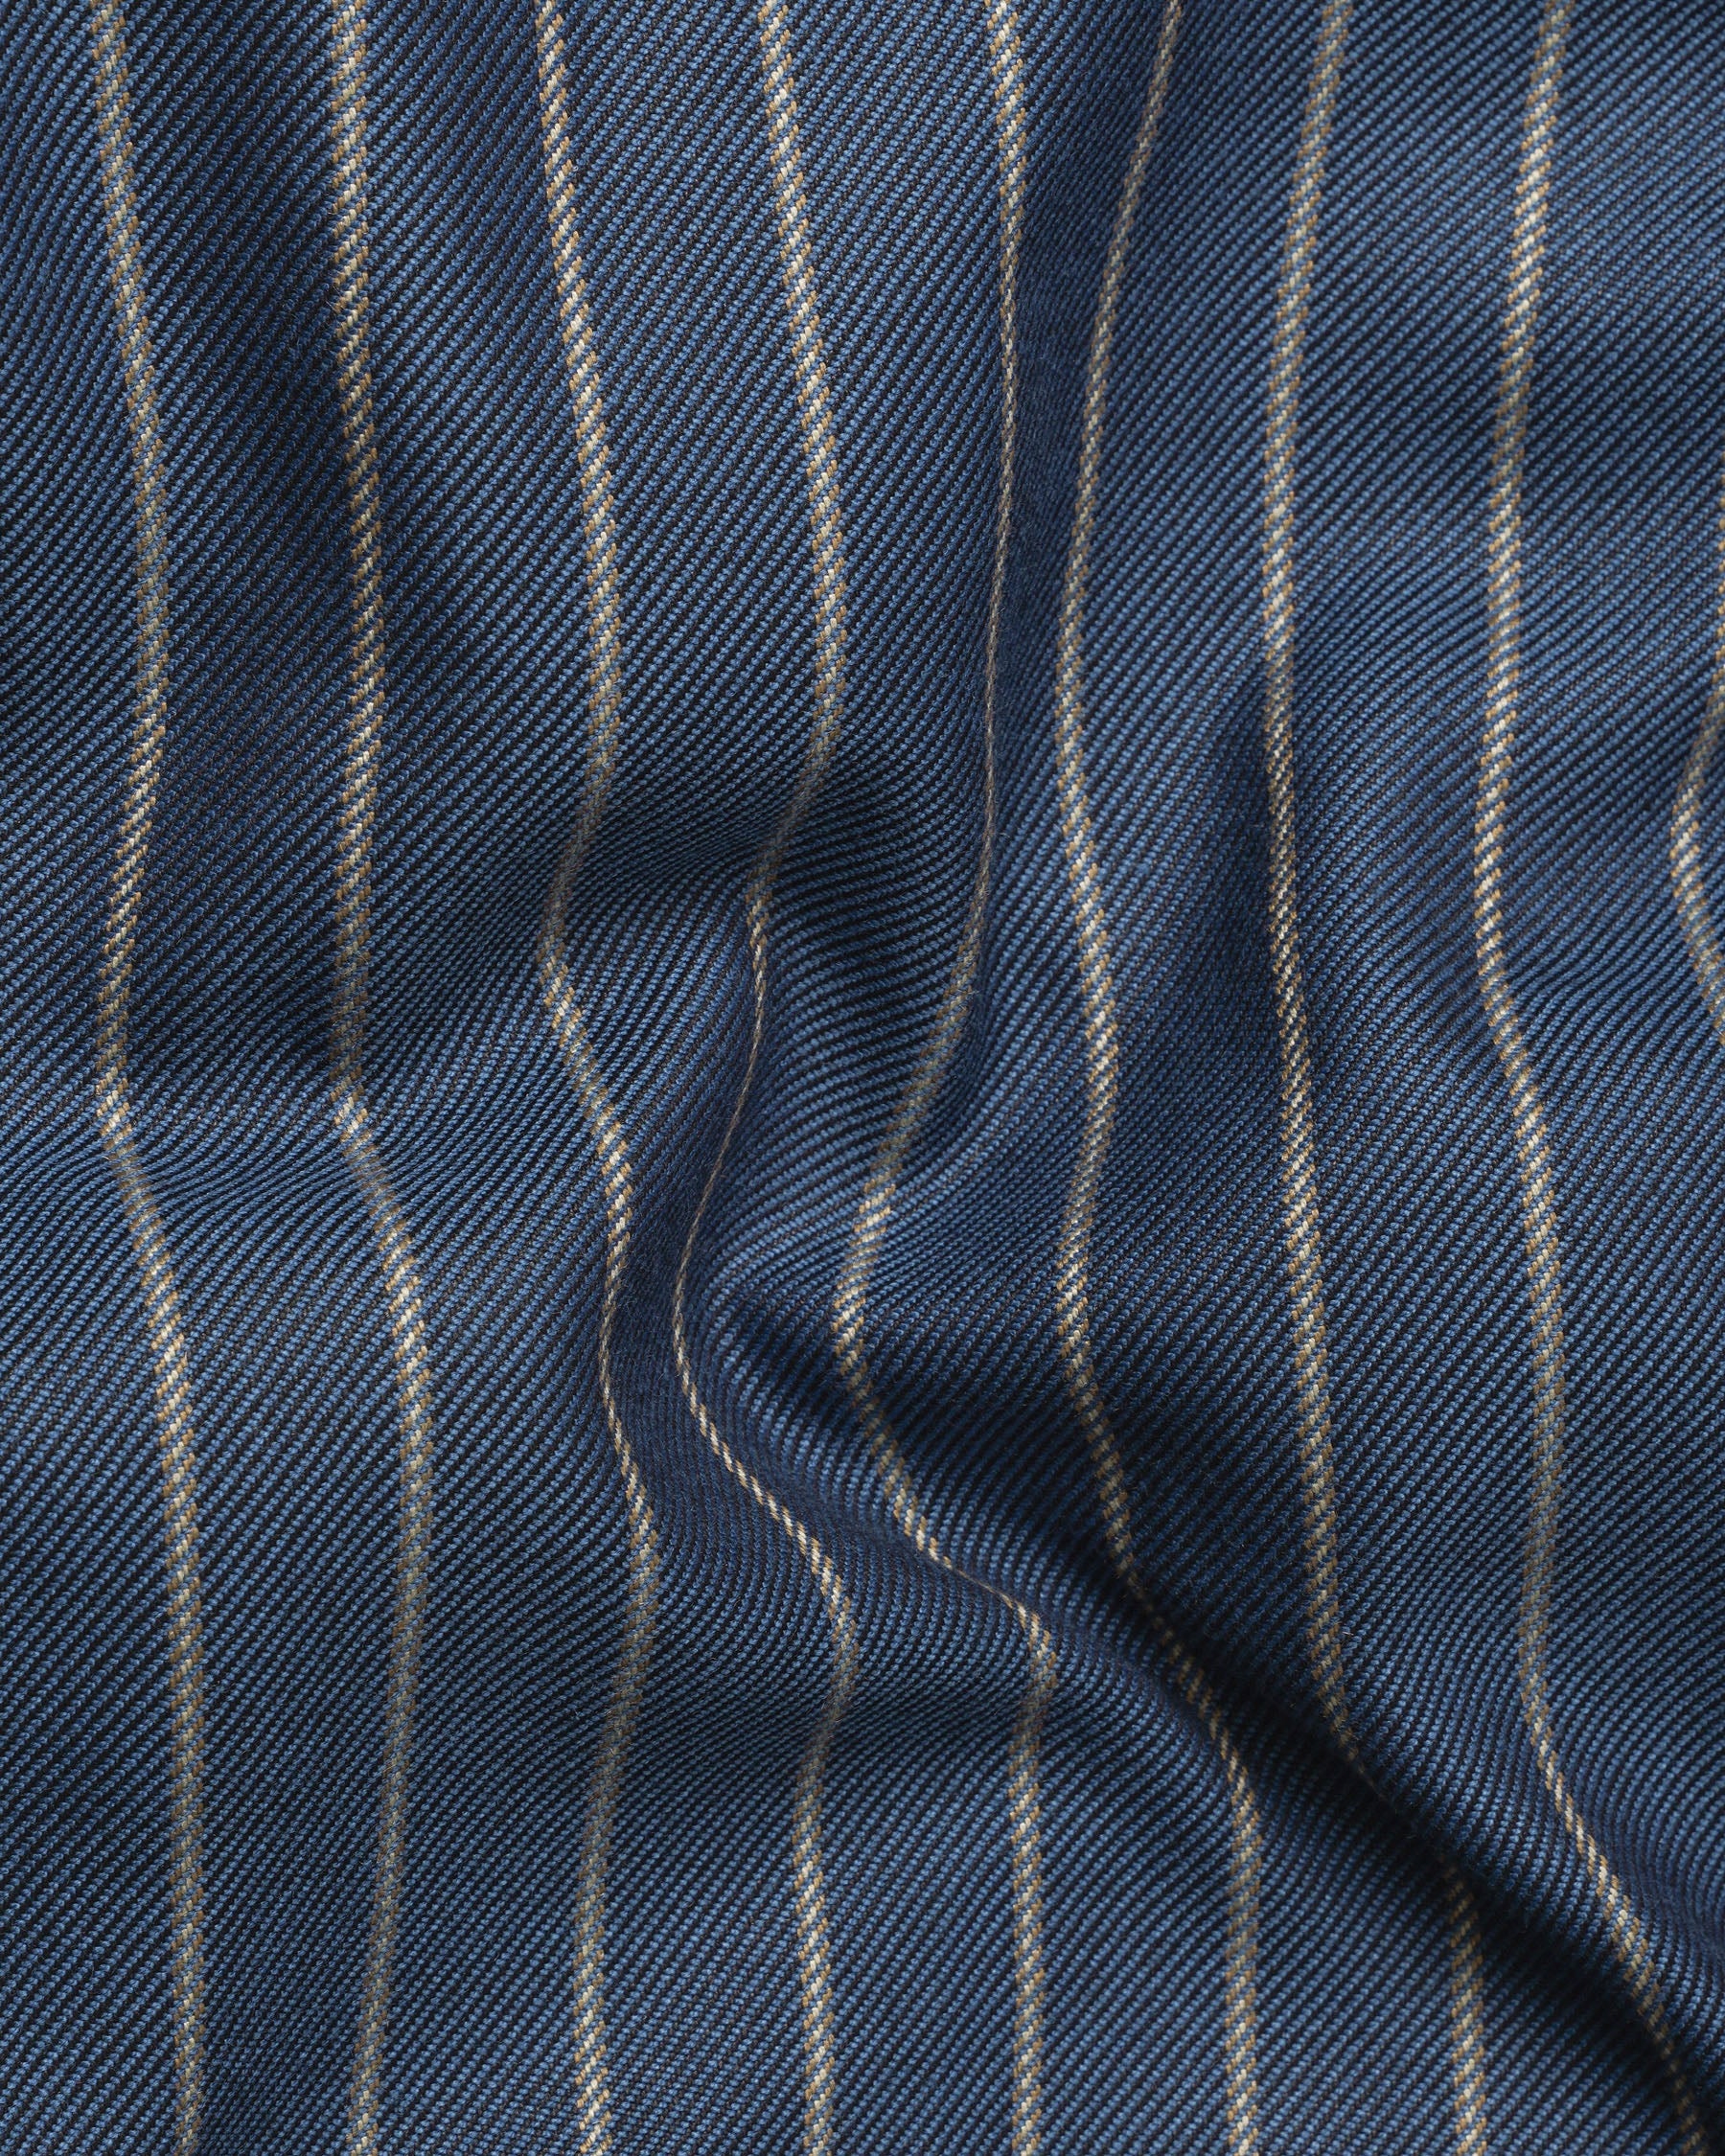 Limed Spruce Blue Striped Pant T2025-28, T2025-30, T2025-32, T2025-34, T2025-36, T2025-38, T2025-40, T2025-42, T2025-44